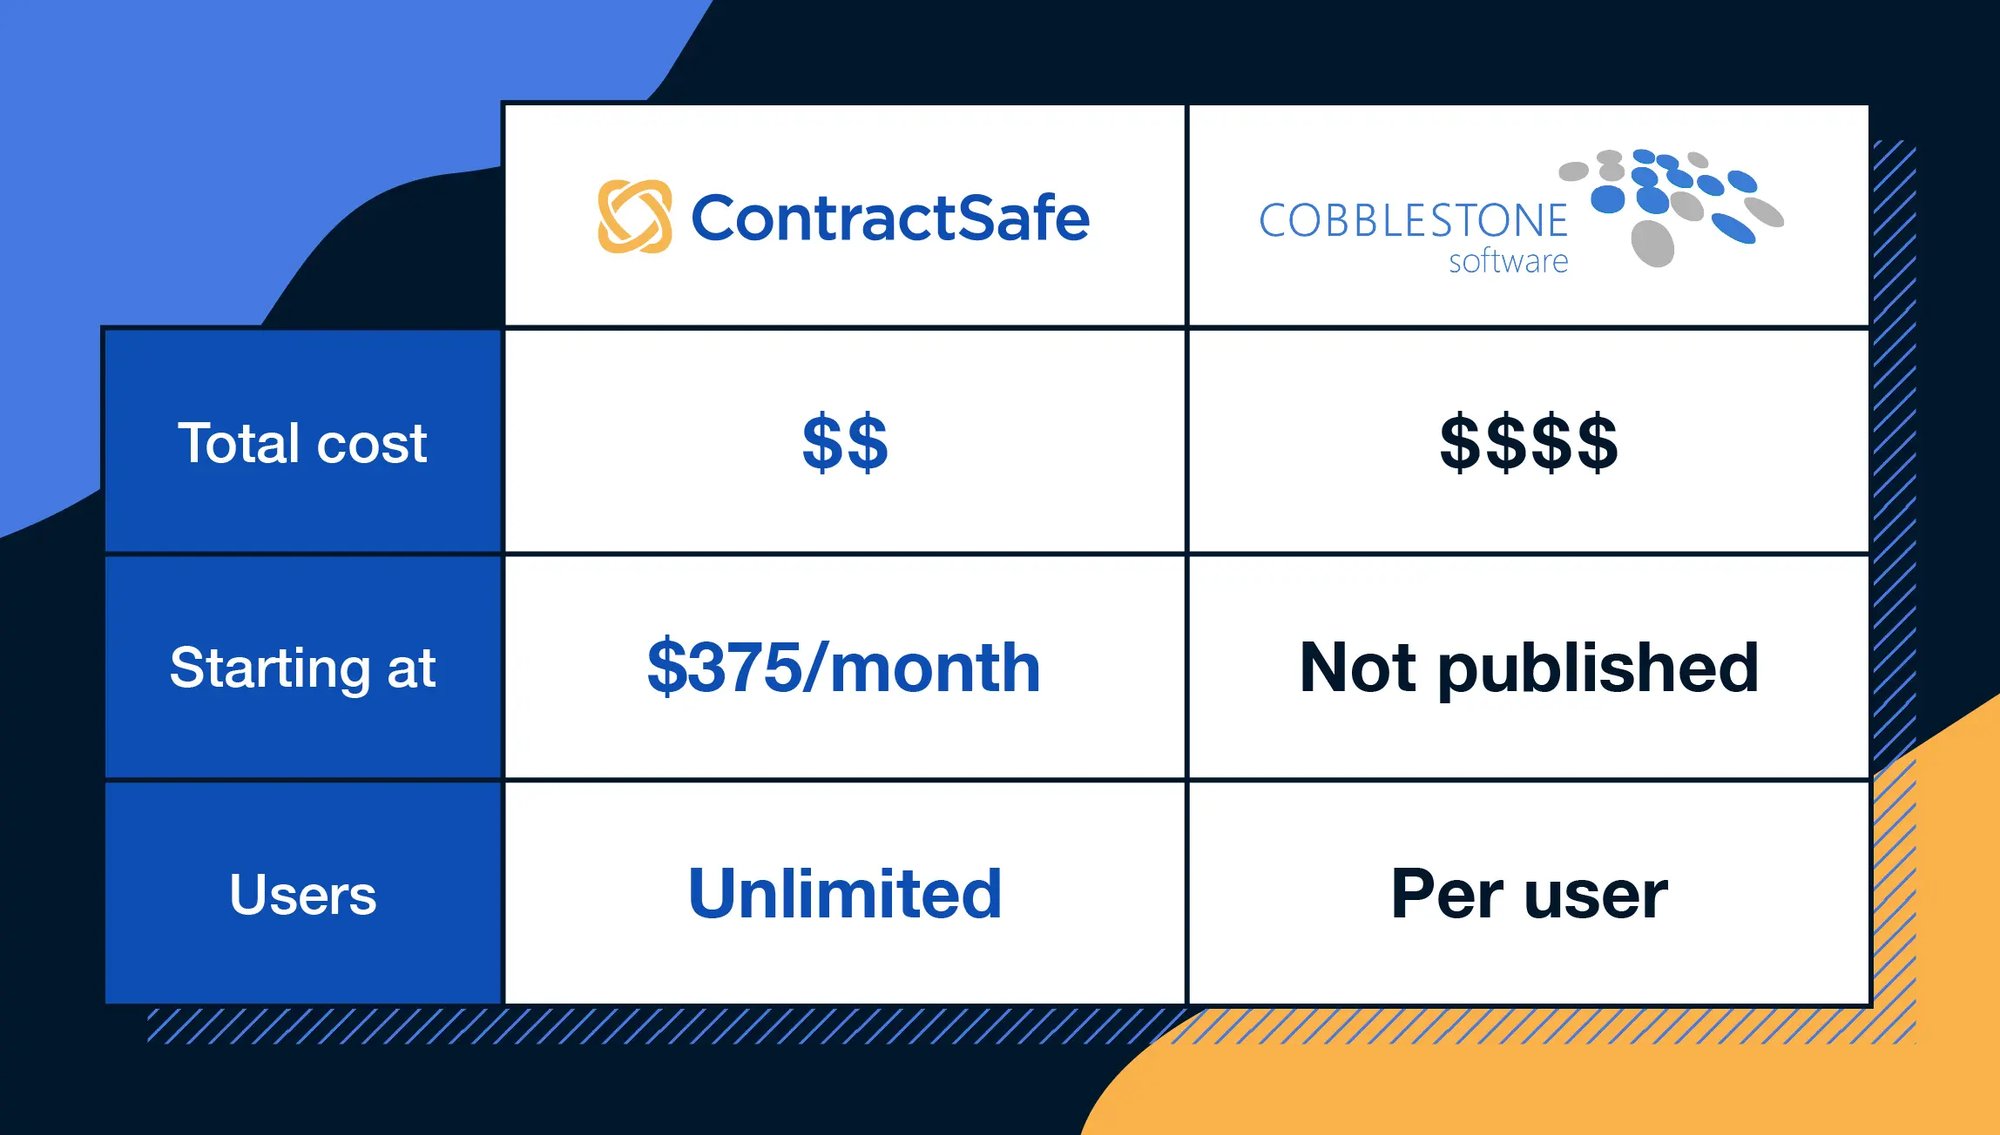 contractsafe-vs-cobblestone-cost-comparison-1